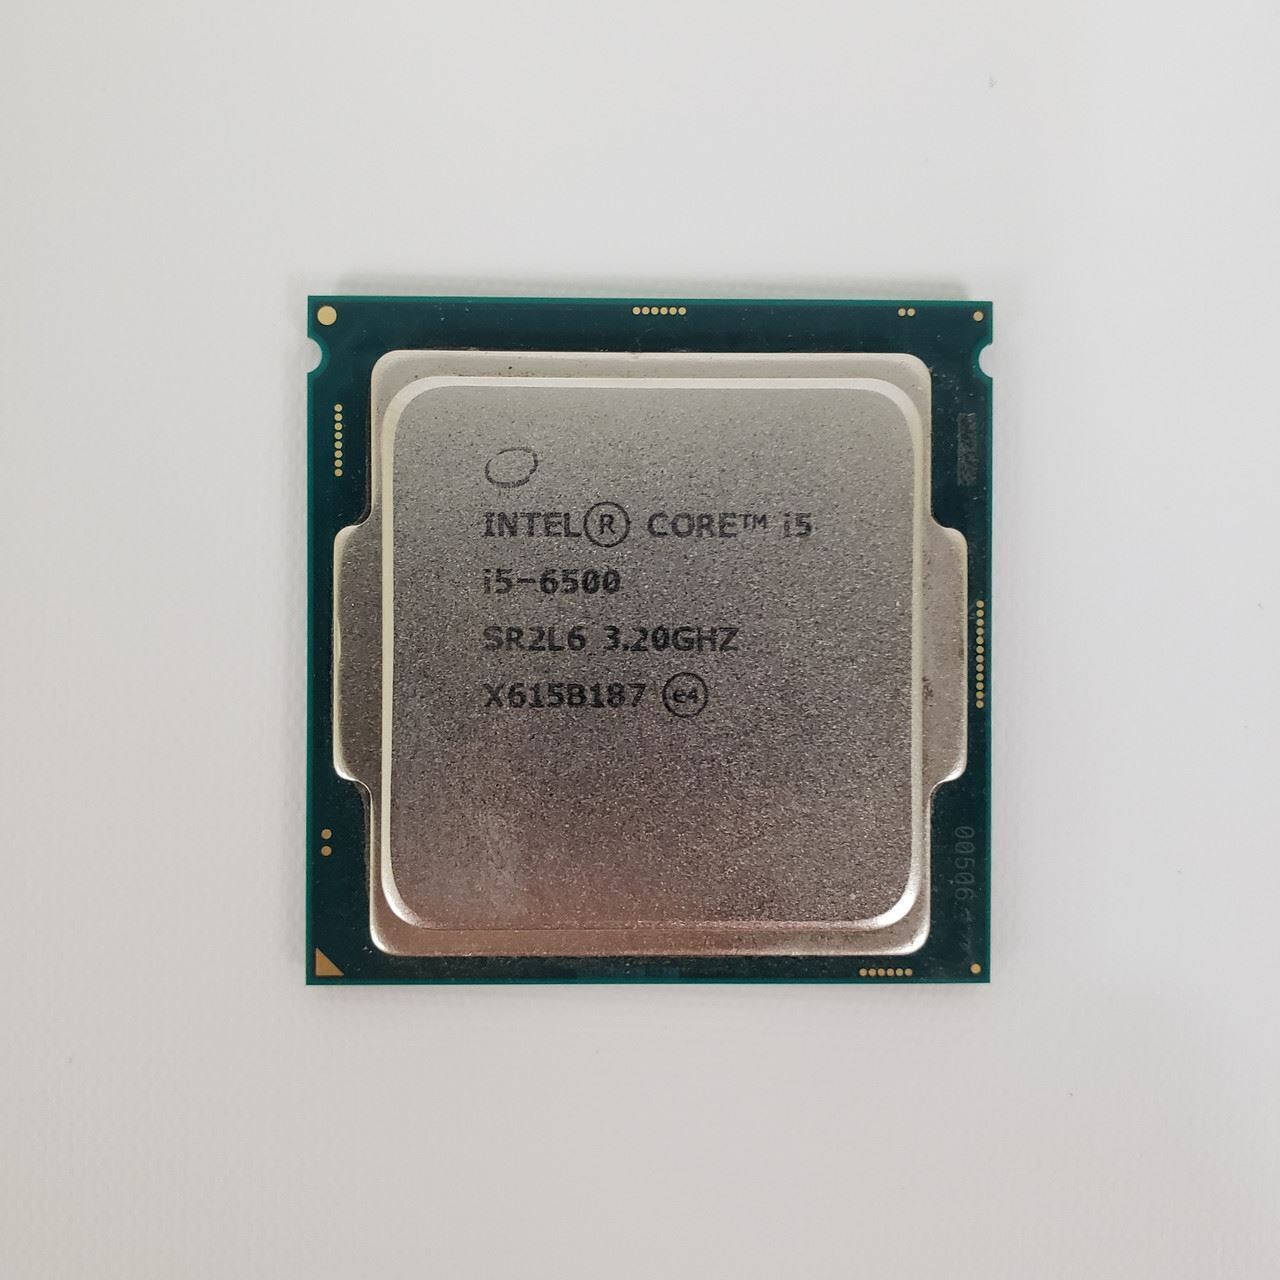 Intel Core i5-6500 SR2L6 3.20GHz Processor | Grade A